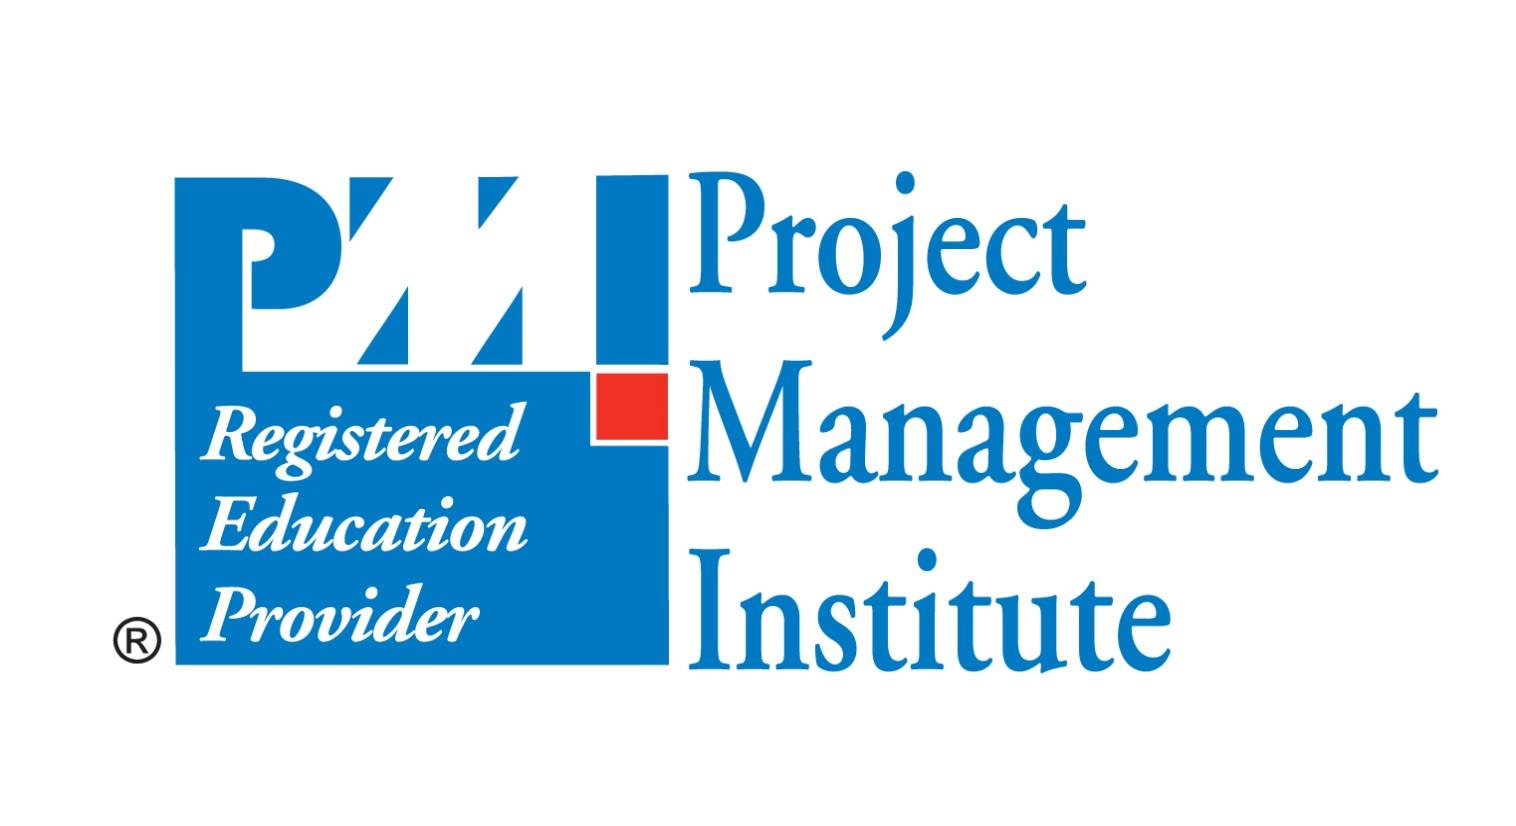 Taller de Certificación Project Management Professional (PMP) Taller de Preparación para Certificación Project Management Professional PMP APCPMP40 PMP es una marca registrada del Project Management